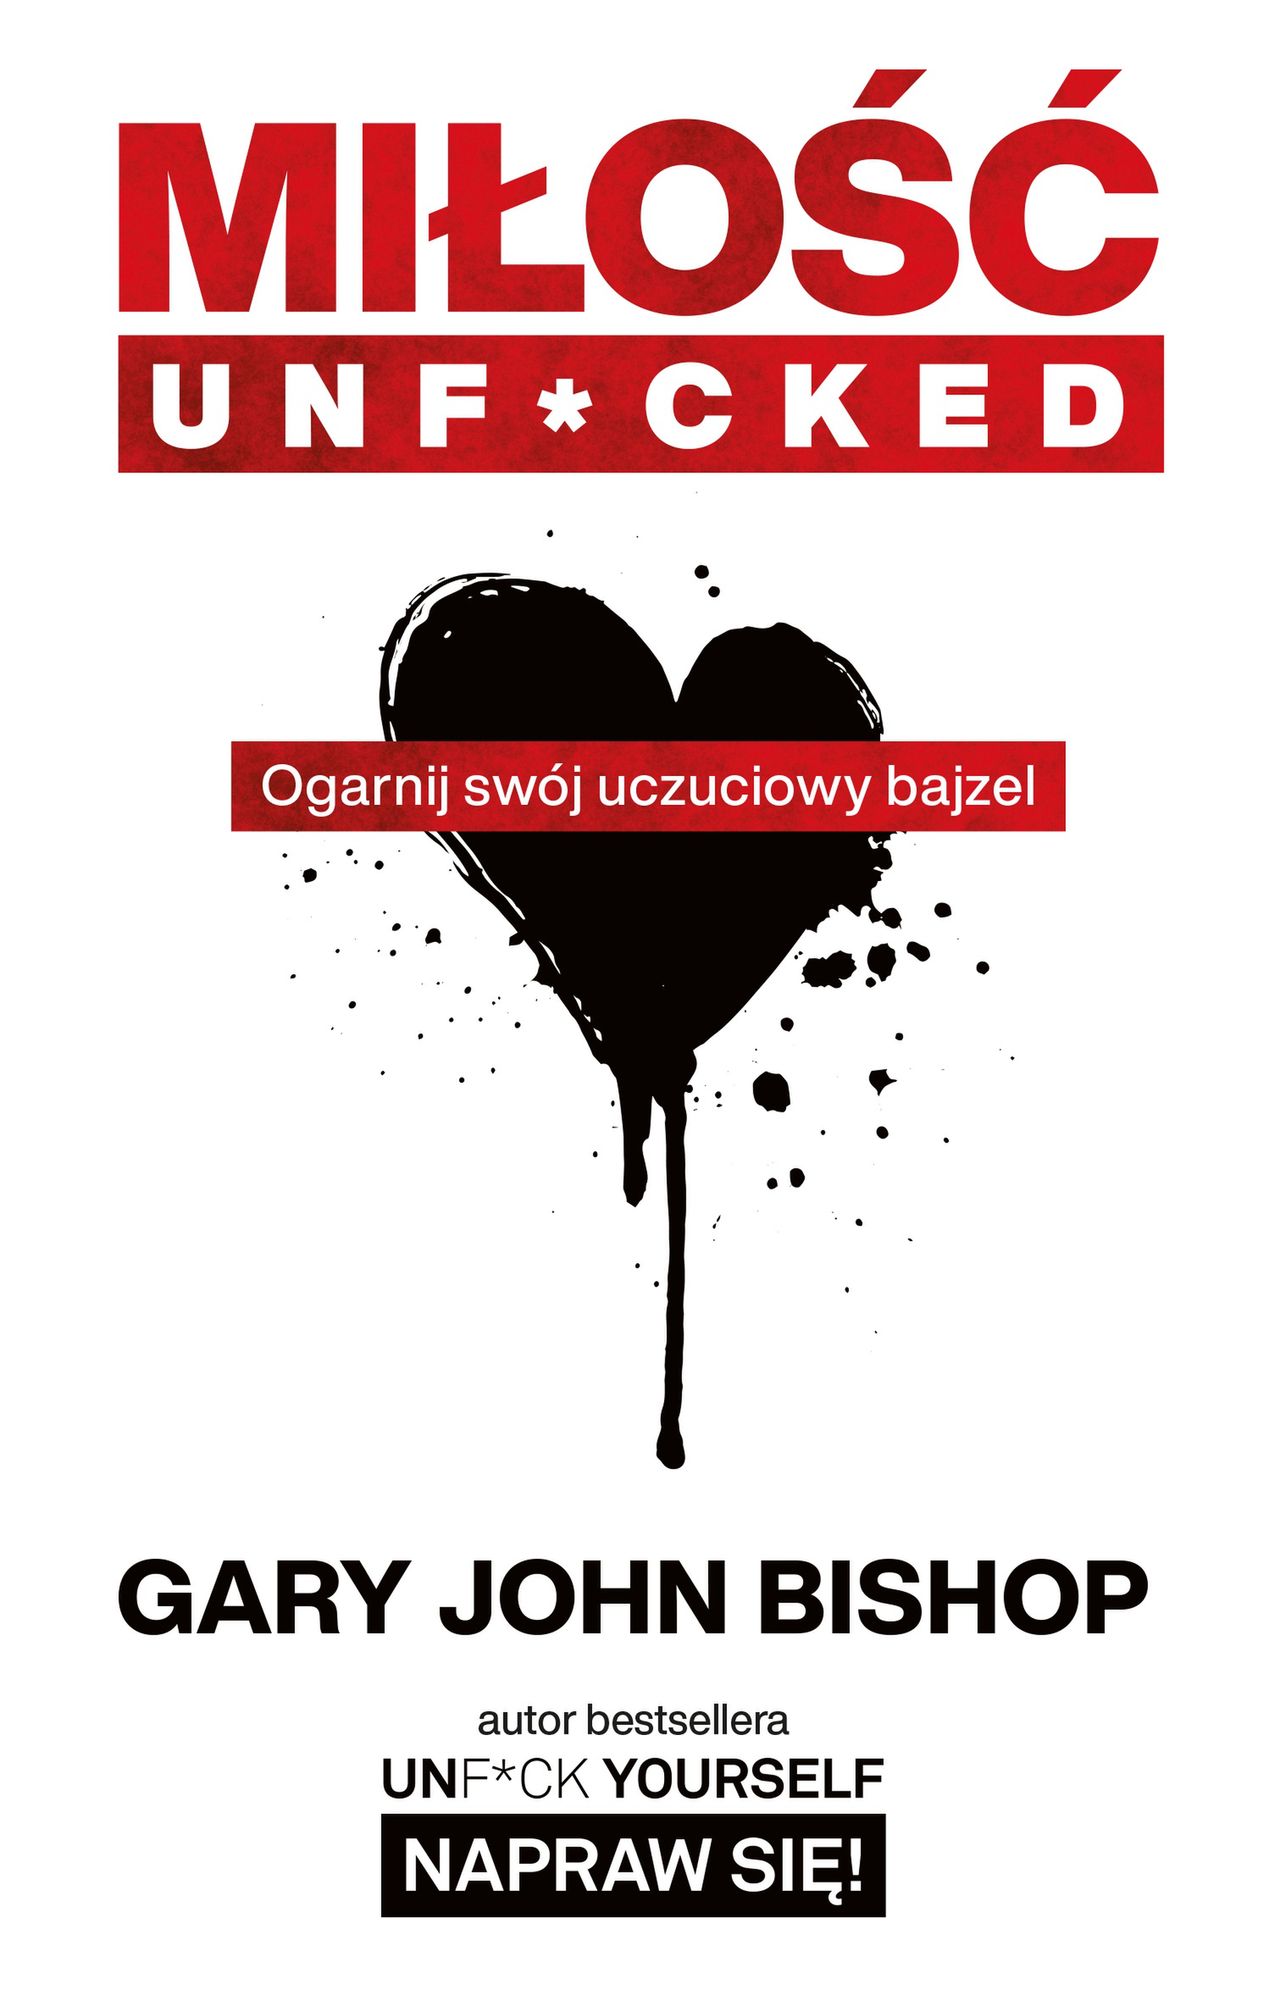 Gary John Bishop, "Miłość unf*cked. Ogarnij swój uczuciowy bajzel"
